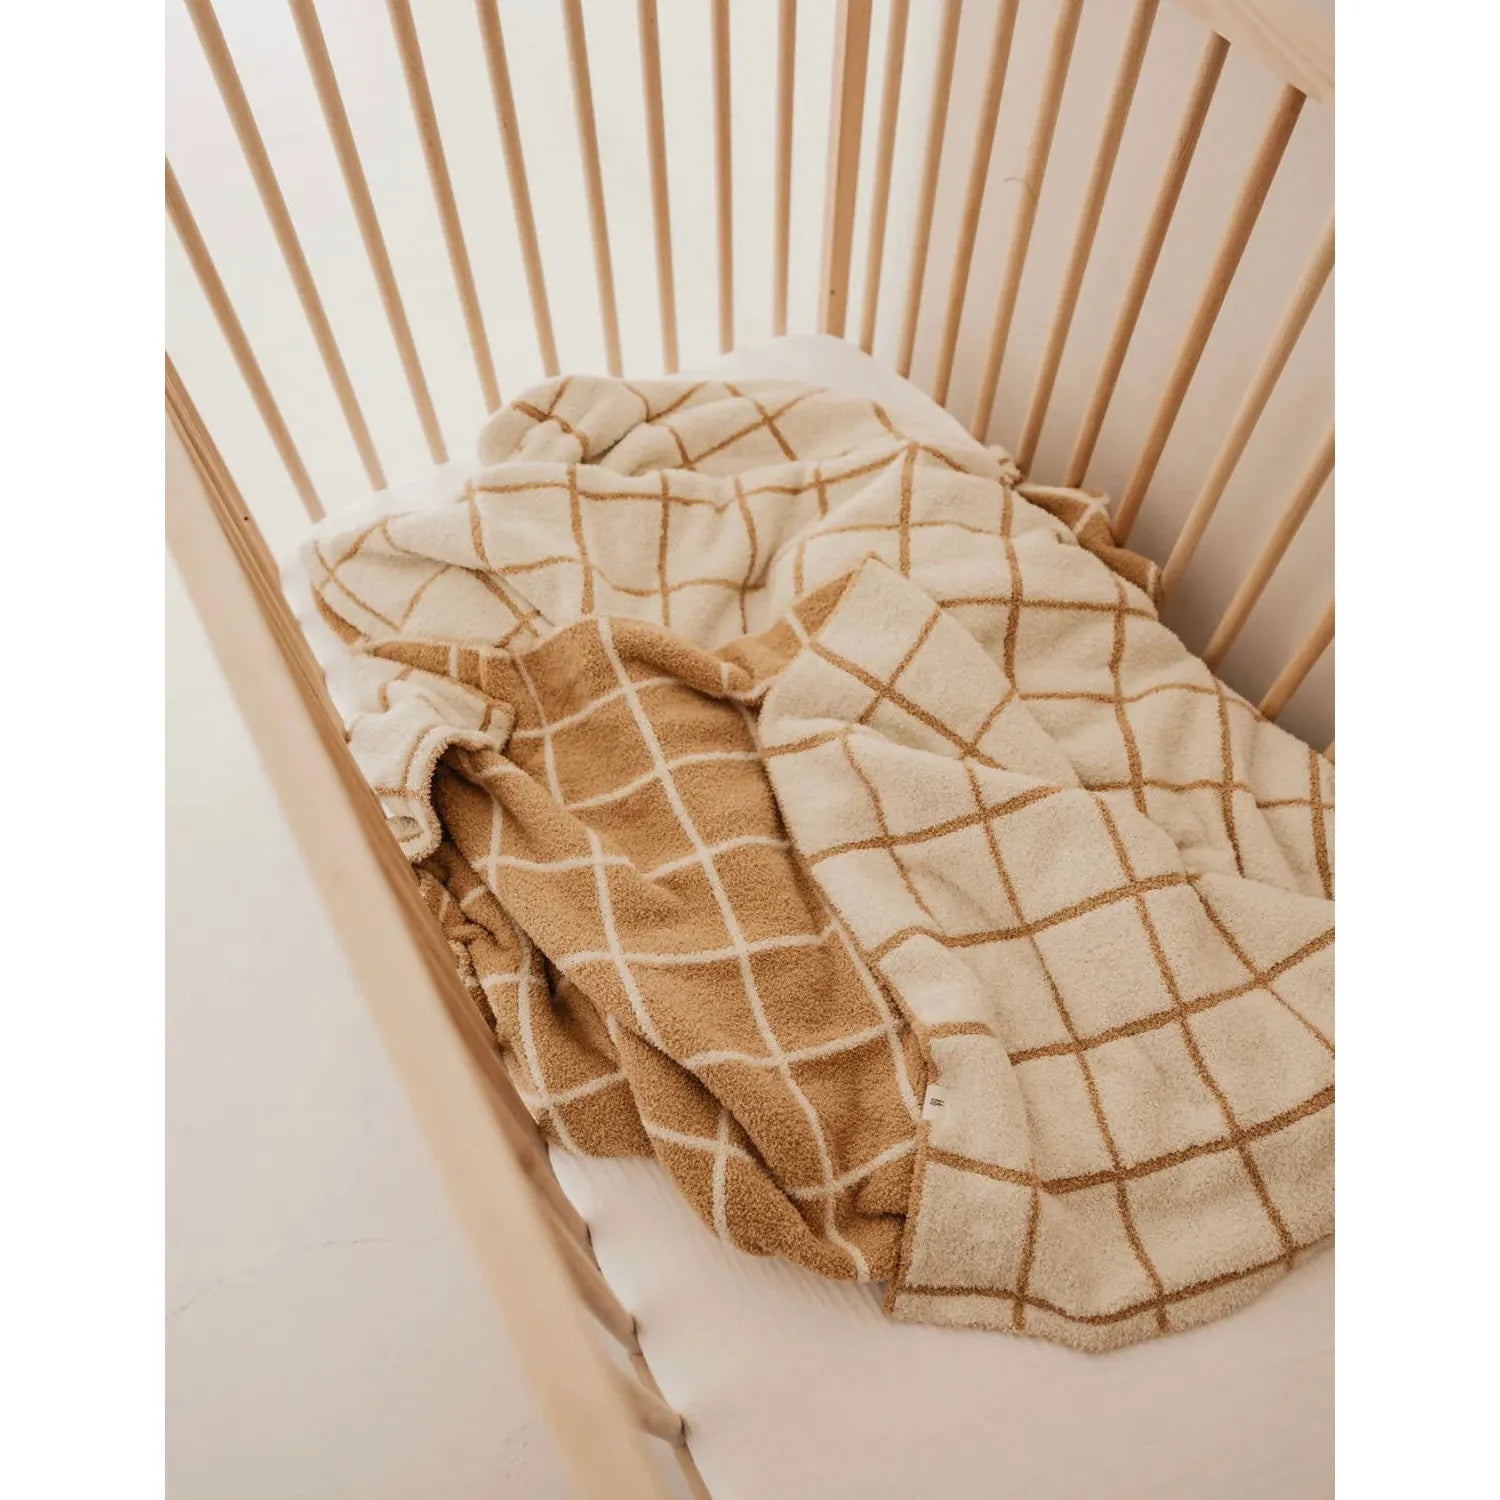 golden grid plush baby blanket